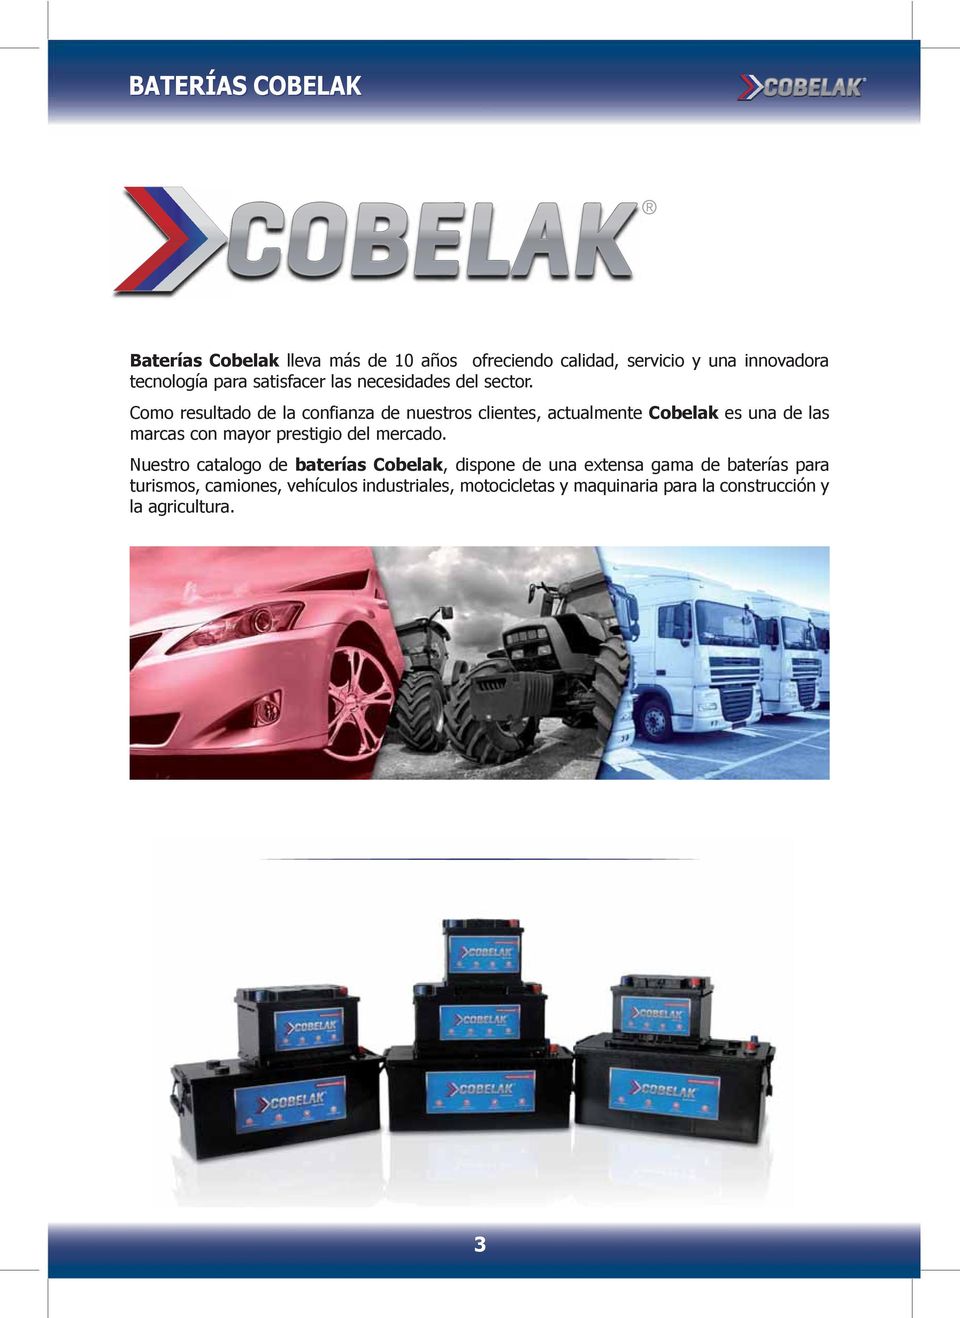 Como resultado de la confianza de nuestros clientes, actualmente Cobelak es una de las marcas con mayor prestigio del